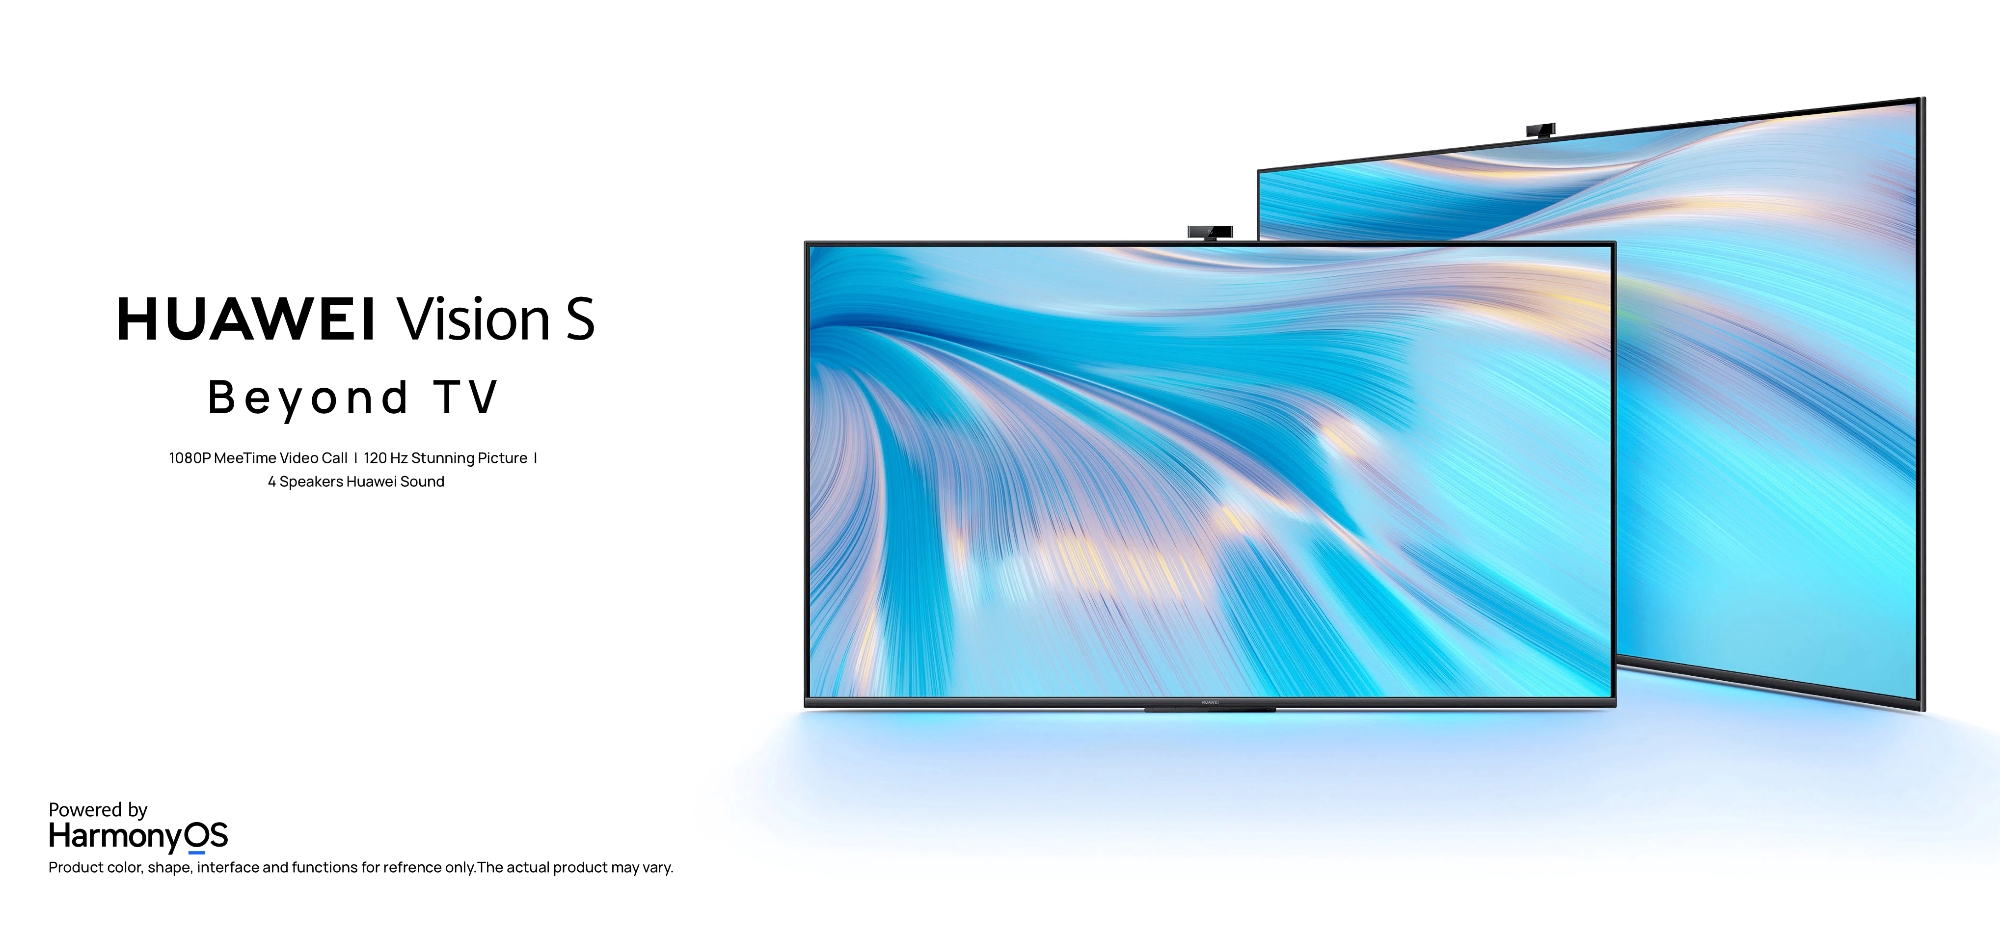 Huawei enthüllt weltweit Vision S Smart-TVs mit 120Hz-Displays und HarmonyOS im Inneren